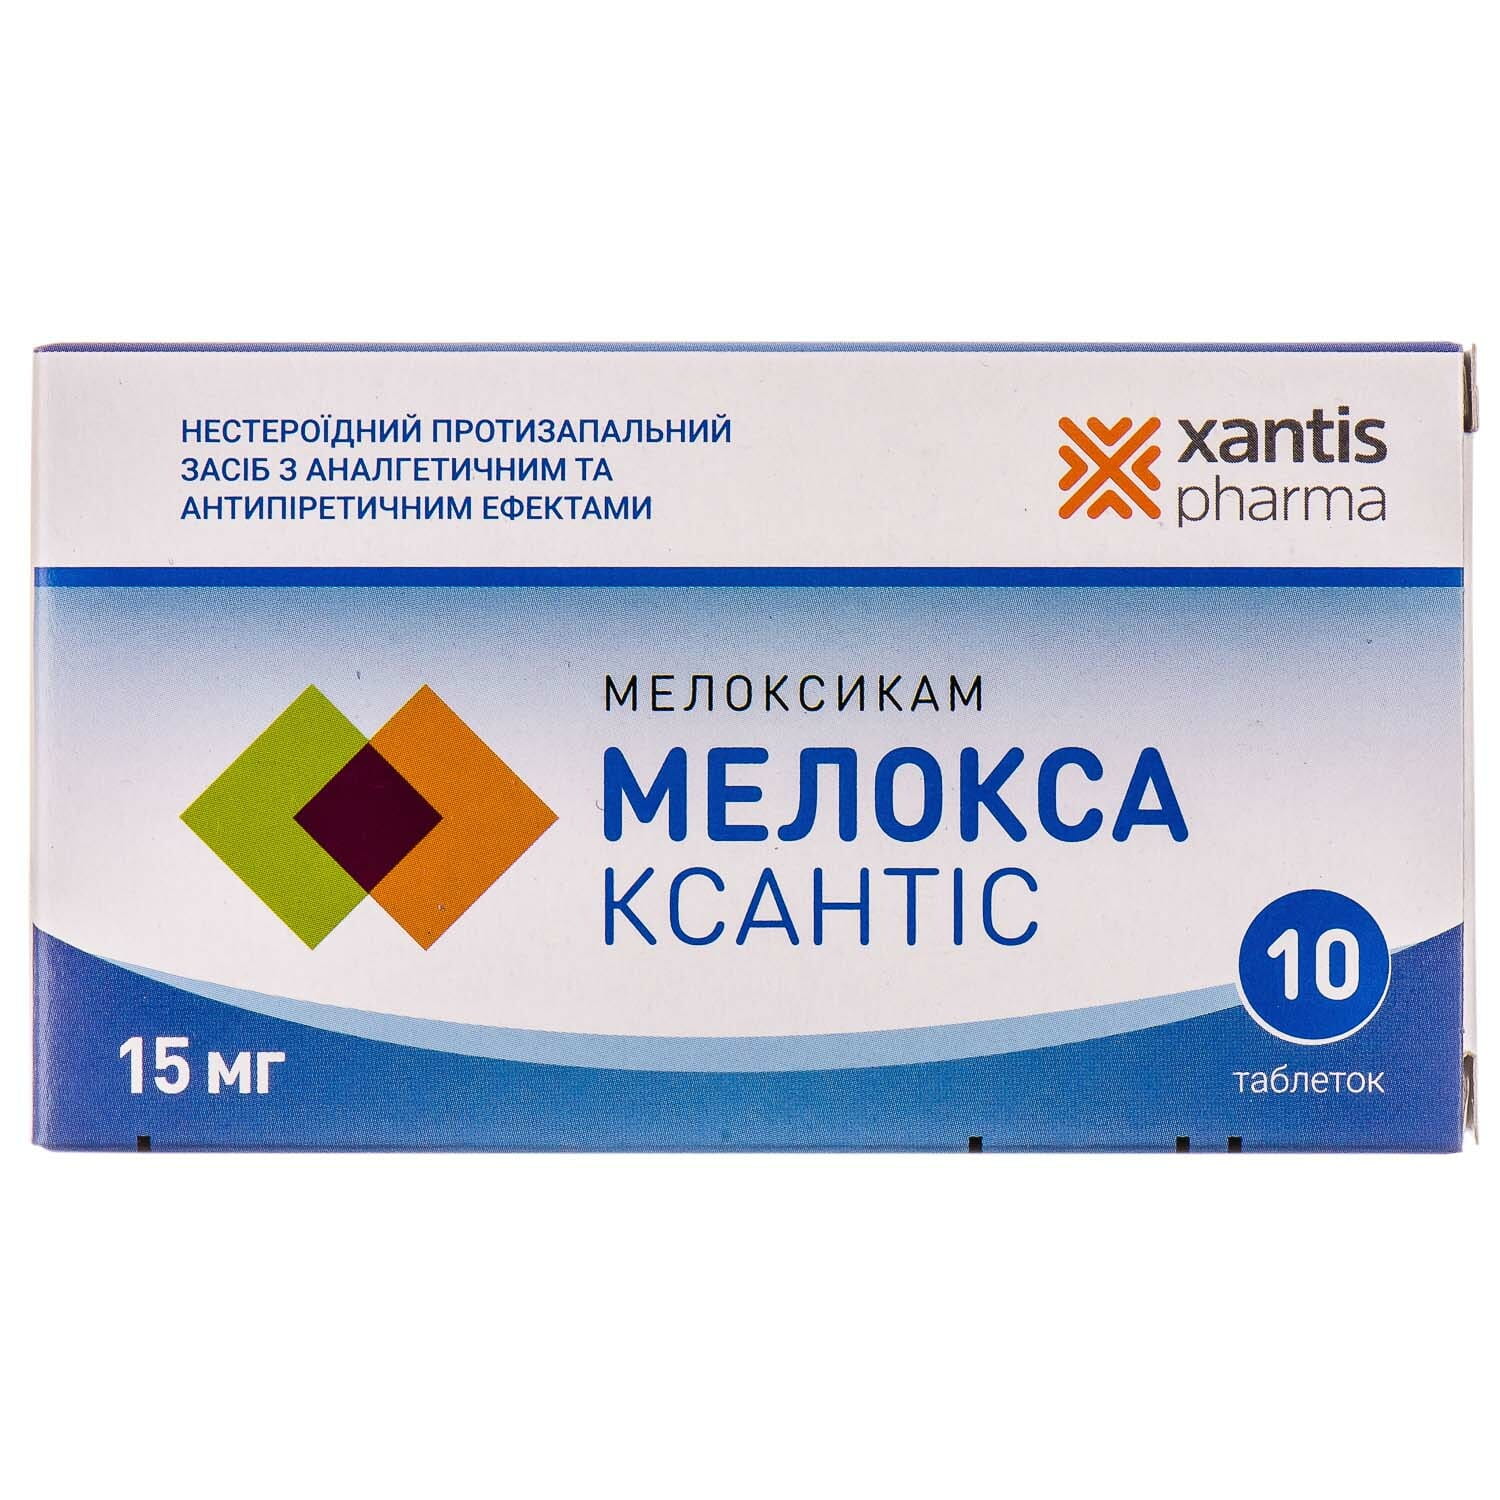 Мелоксикам таблетки. Мелоксикам КСАНТИС. Мелокс 15 мг. КСАНТИС Фарма. Xantis Pharma препараты.